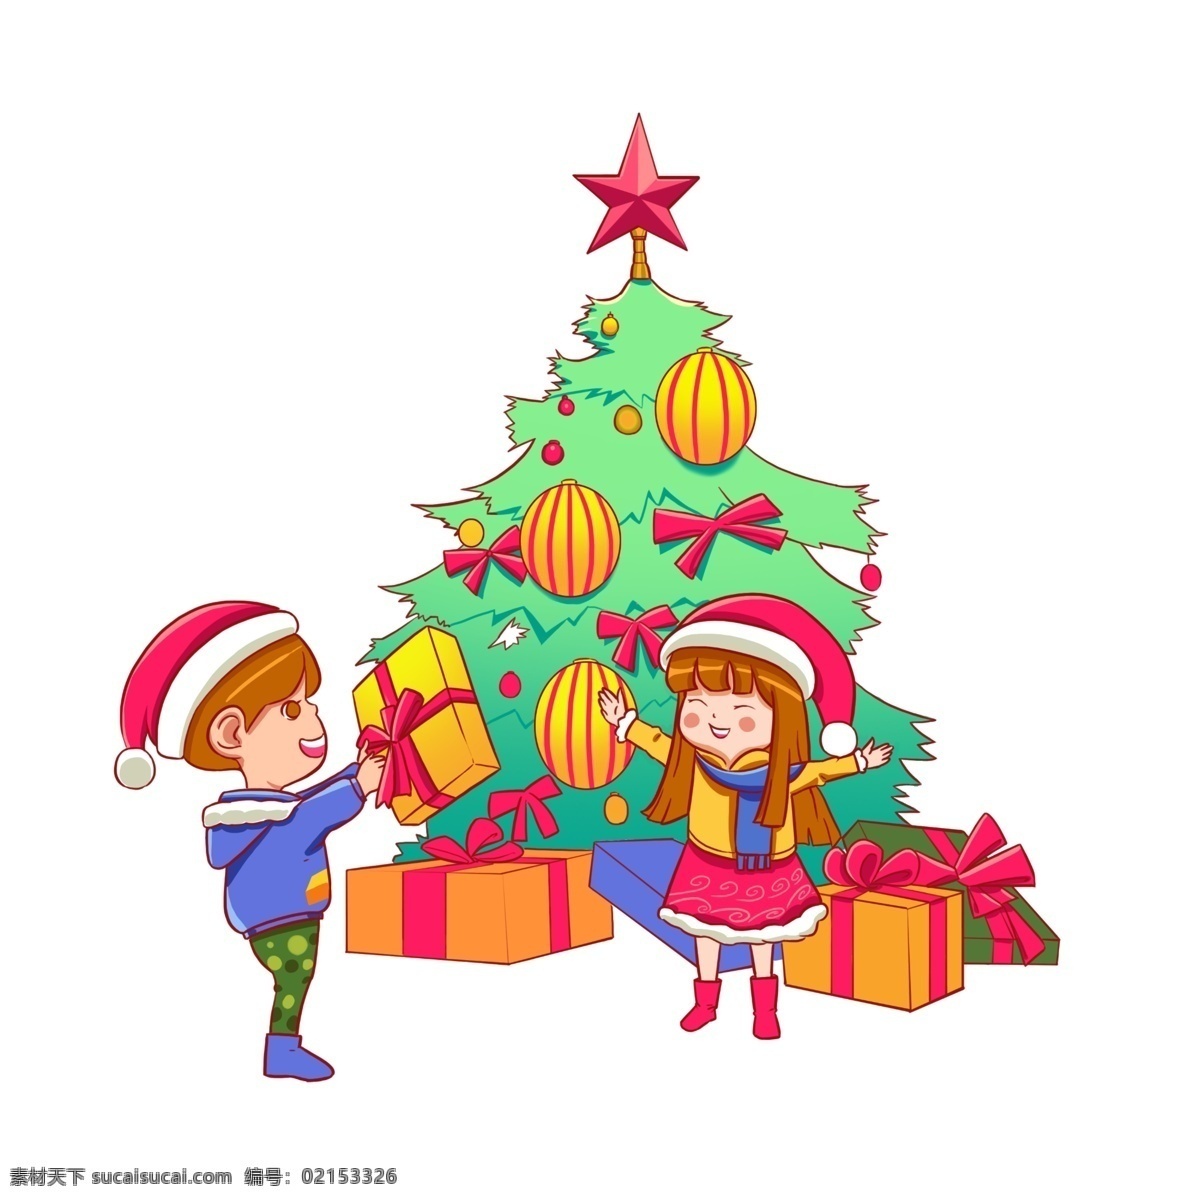 圣诞节 收到 圣诞 礼物 男孩 女孩 圣诞树 冬季 冬天 装饰 圣诞老人 礼物盒 男孩女孩 圣诞礼物 传统节日 送礼物 卡通形象